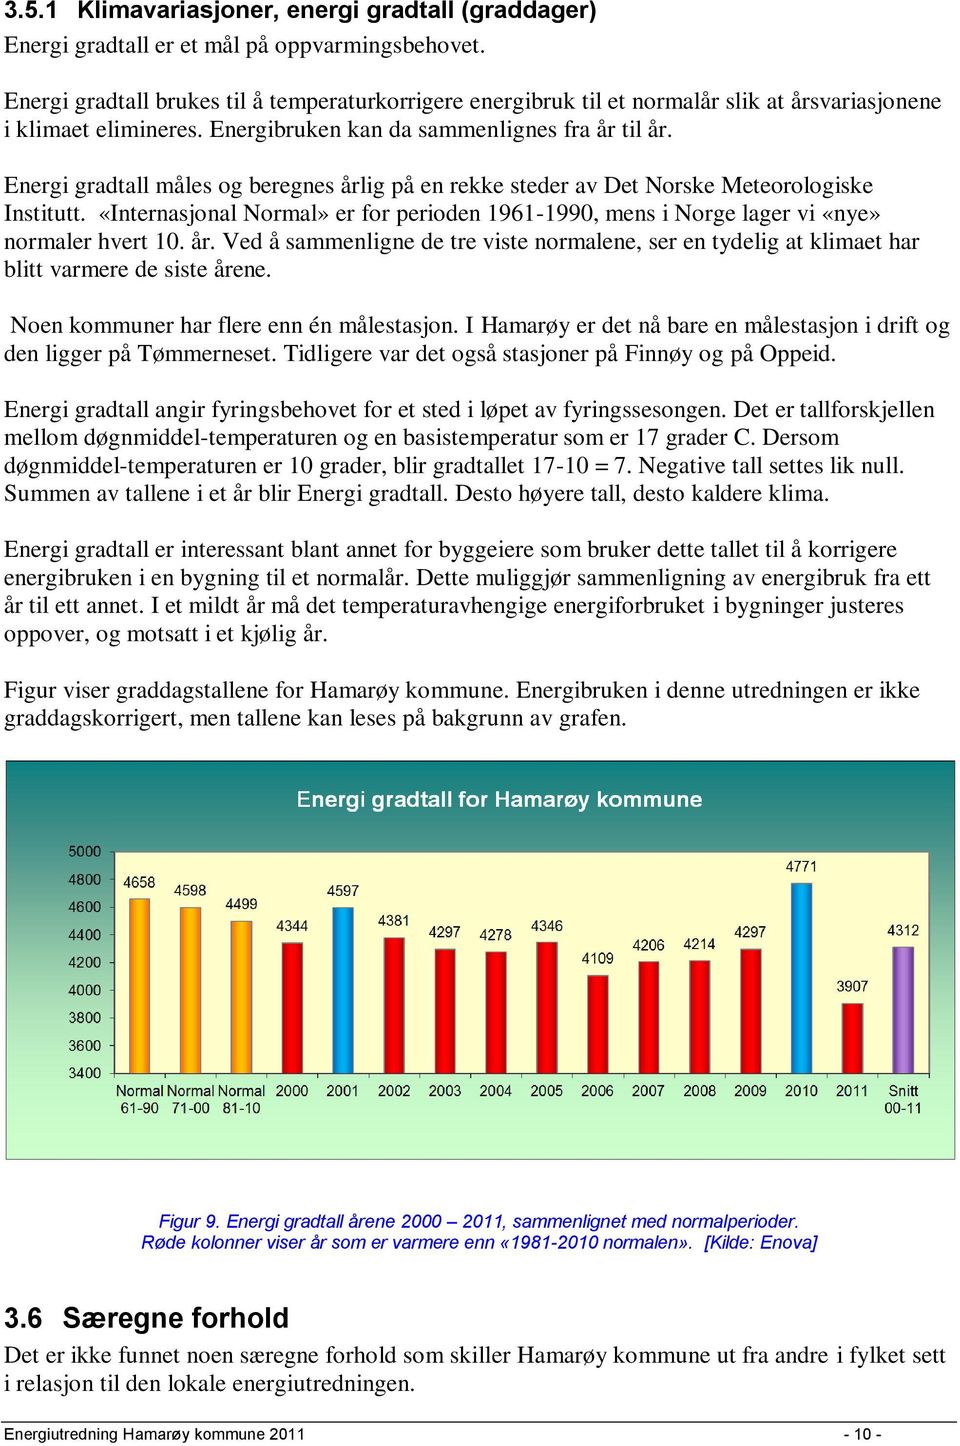 Energi gradtall måles og beregnes årlig på en rekke steder av Det Norske Meteorologiske Institutt. «Internasjonal Normal» er for perioden 1961-1990, mens i Norge lager vi «nye» normaler hvert 10. år. Ved å sammenligne de tre viste normalene, ser en tydelig at klimaet har blitt varmere de siste årene.